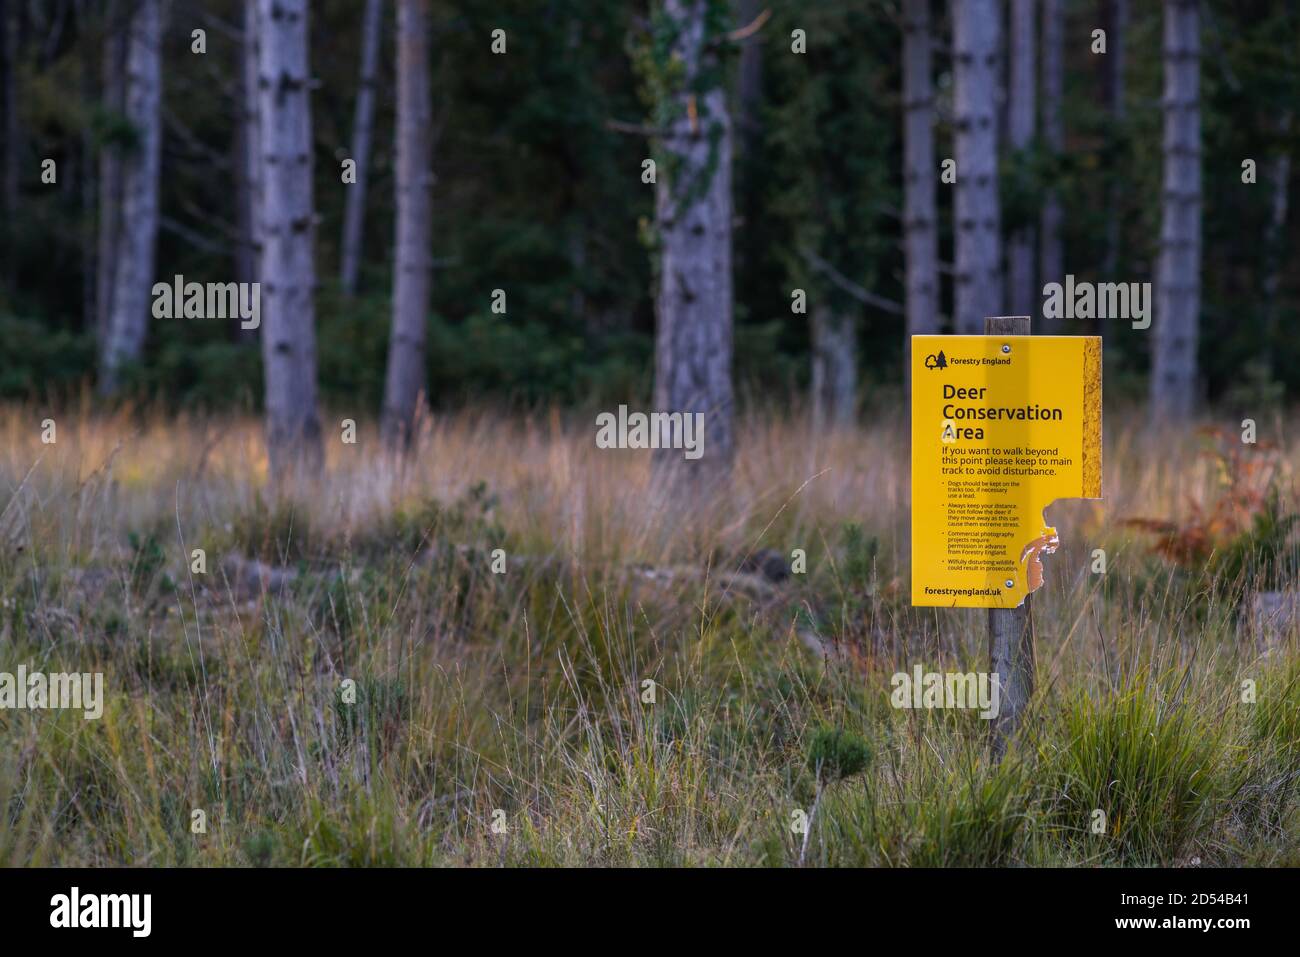 Panneau de la zone de conservation du cerf jaune dans le parc national de New Forest, Hampshire, Angleterre, Royaume-Uni Banque D'Images